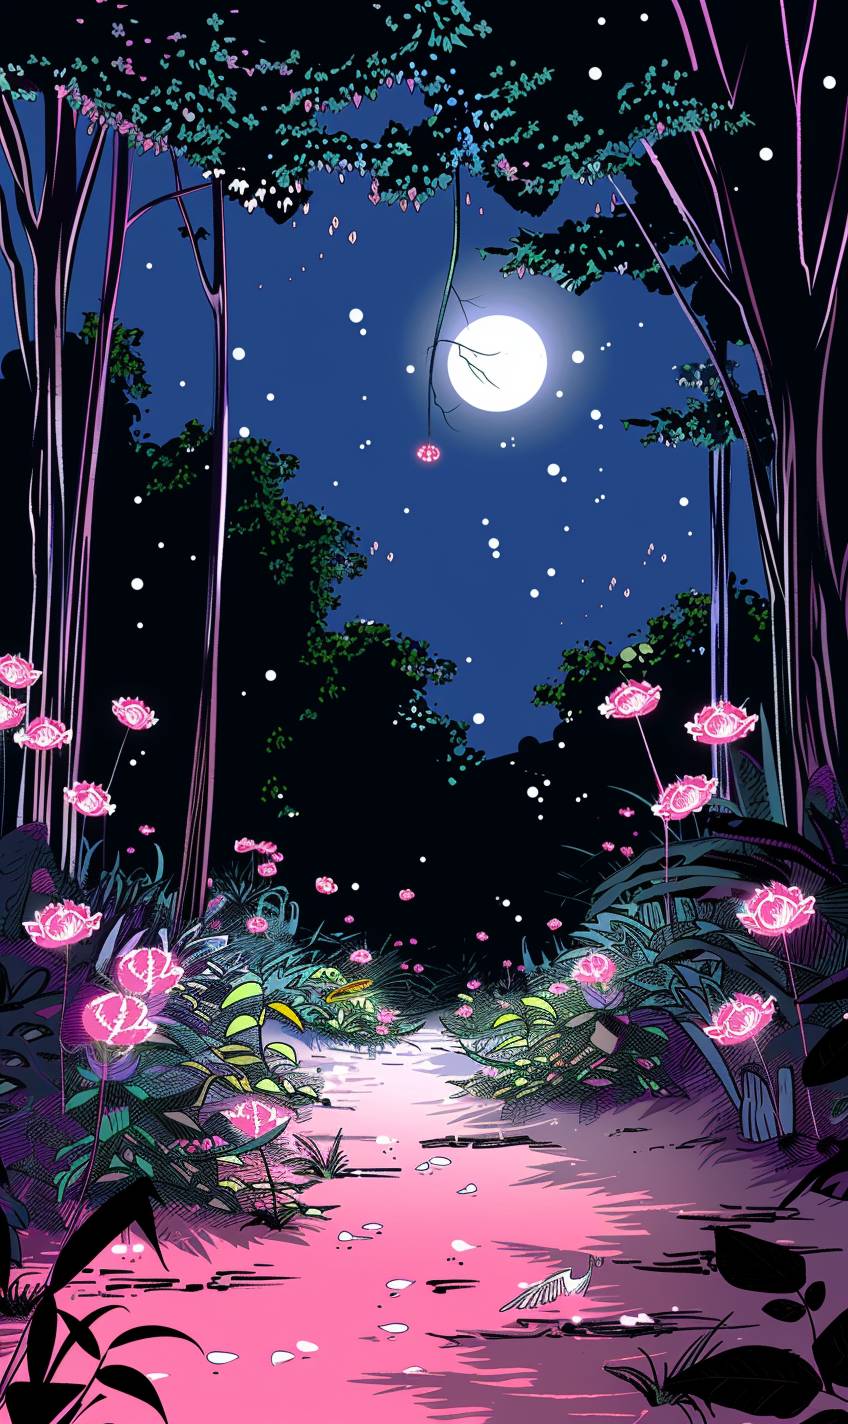 輝く植物、幻想的な生物、そよ風に包まれた神秘な魔法の森、柔らかな月明かりが幻想的な雰囲気を作り出す